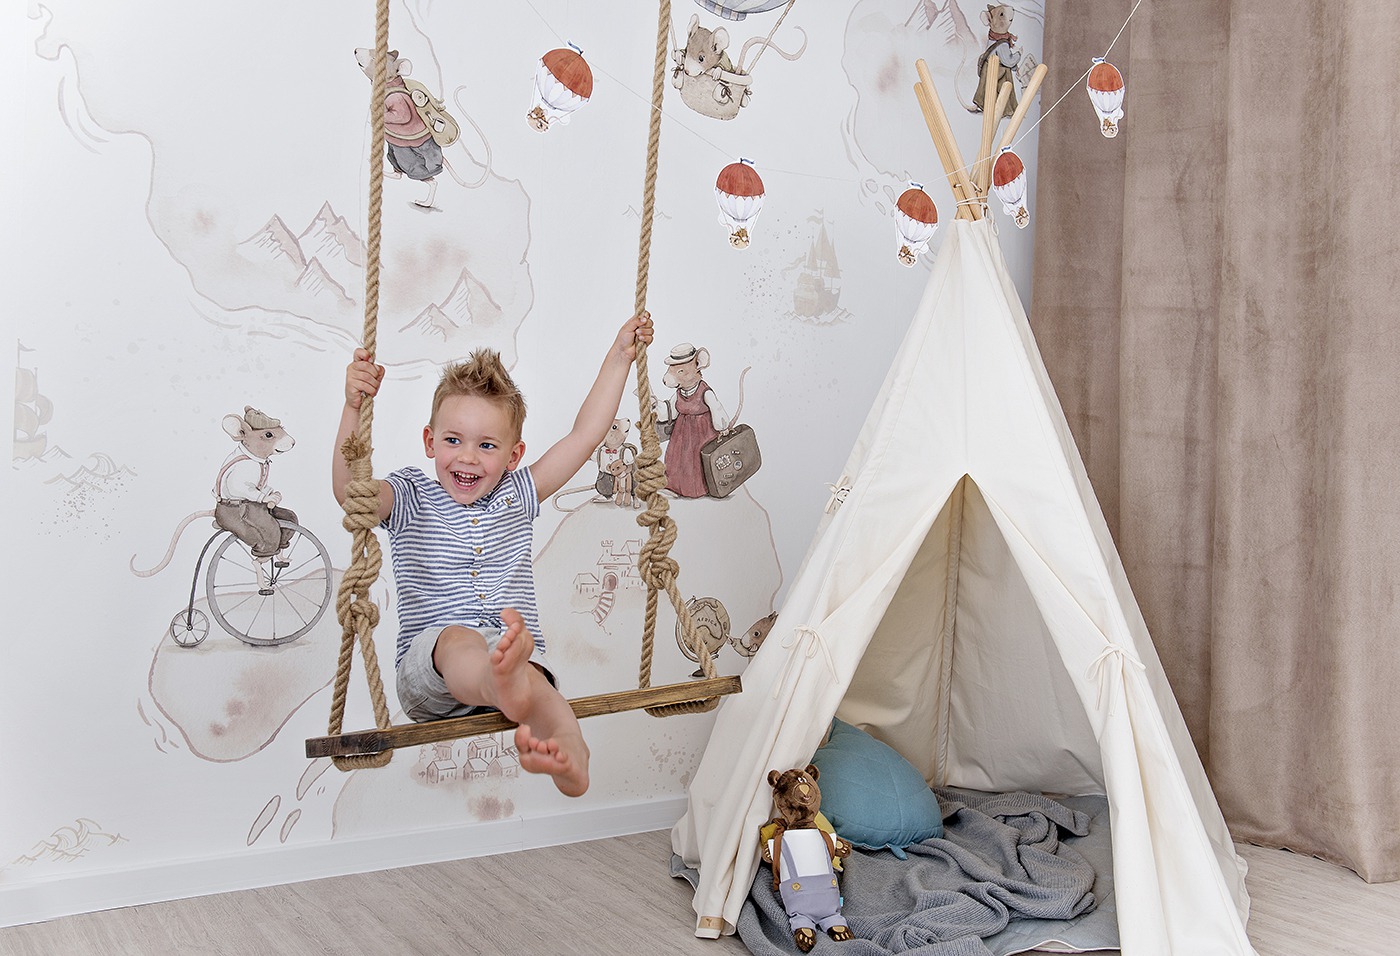 Stwórz magiczną atmosferę w pokoju dziecka z tapetą przedstawiającą myszkę podróżniczkę.